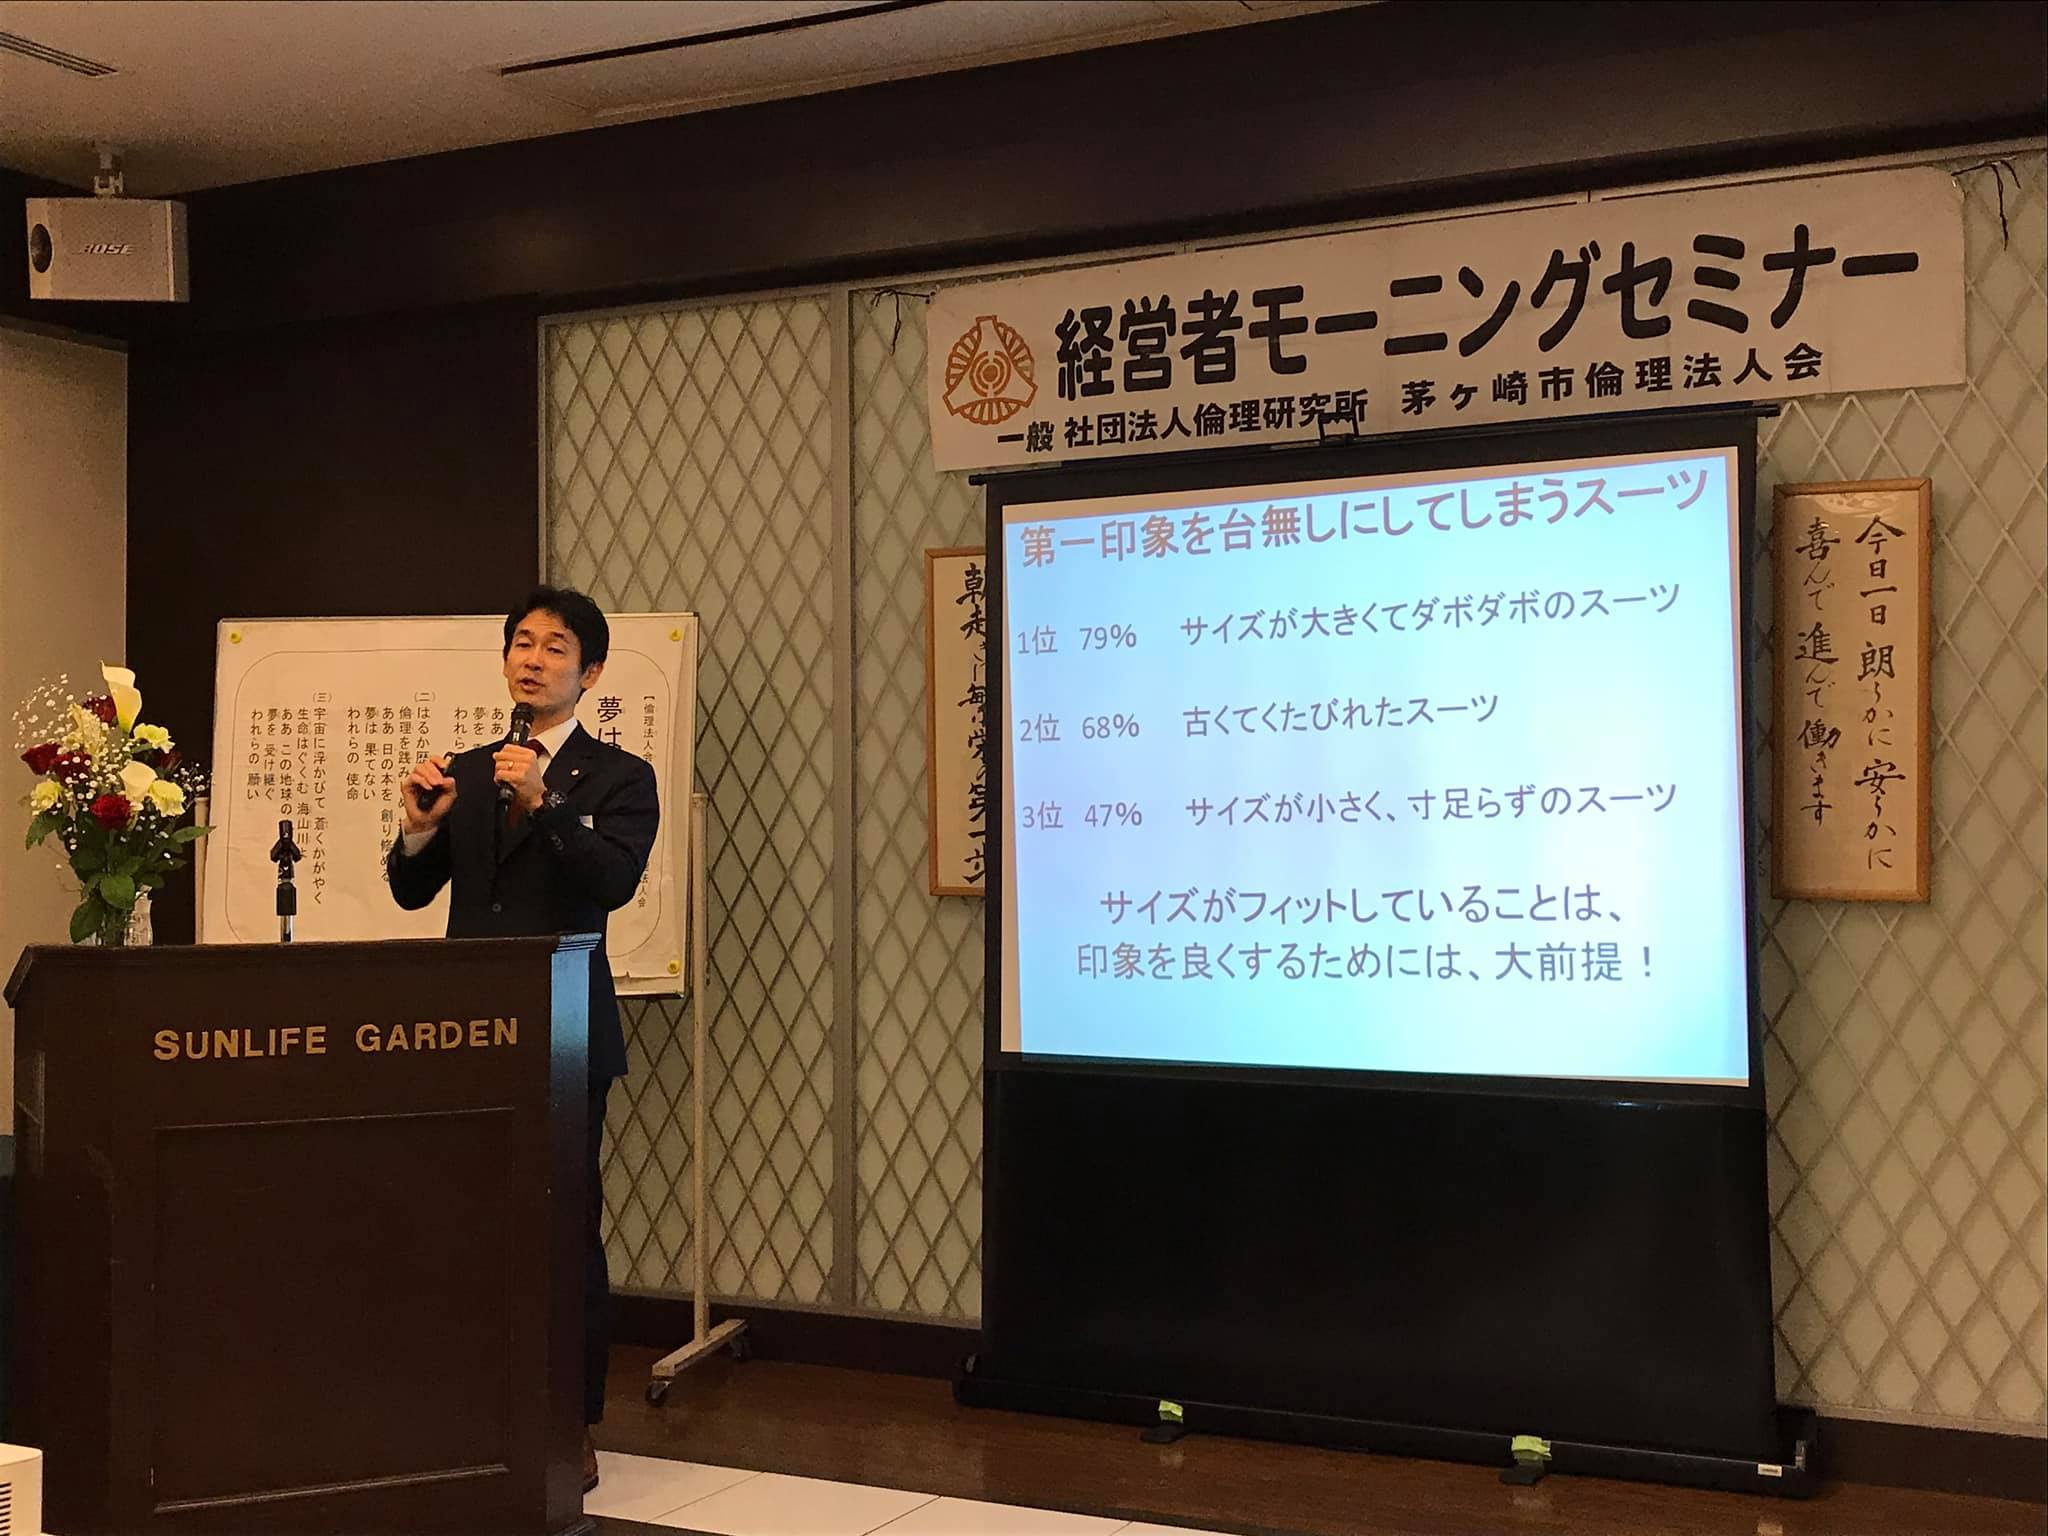 茅ヶ崎倫理法人会の、イブニングセミナー、翌朝のモーニングセミナーにて、連続講話をさせて頂きました!